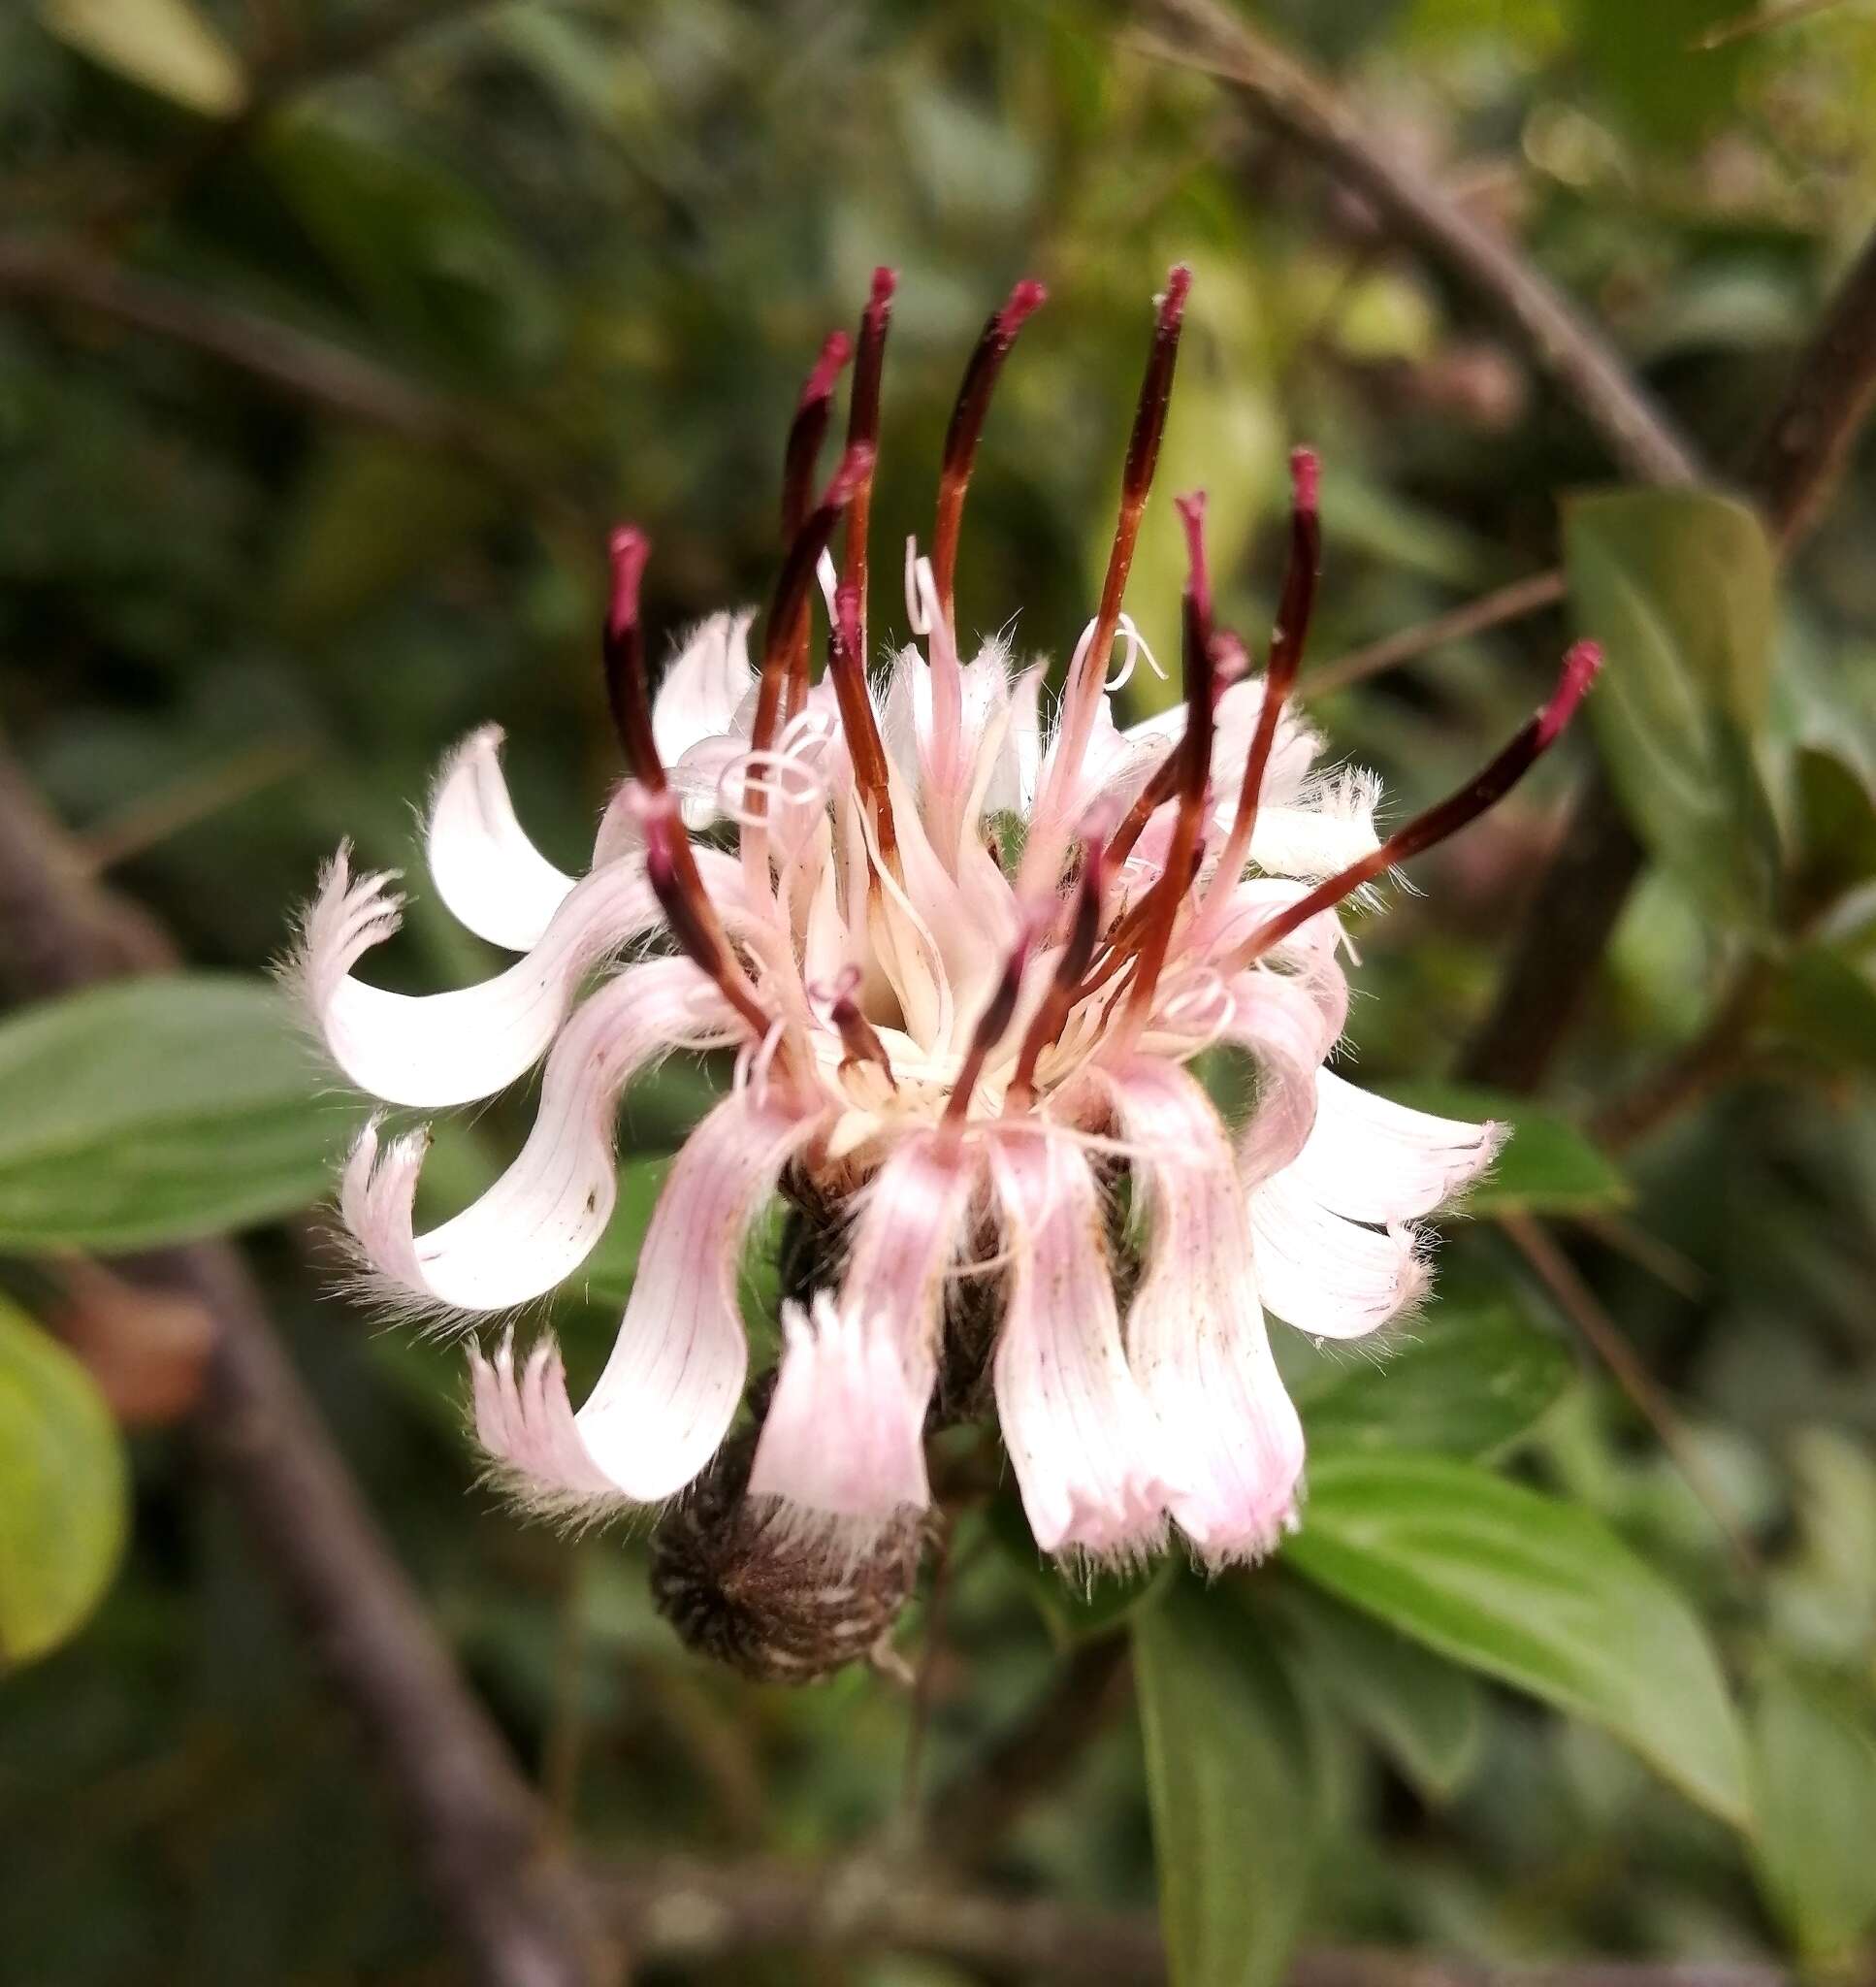 Image of Barnadesia spinosa L. fil.